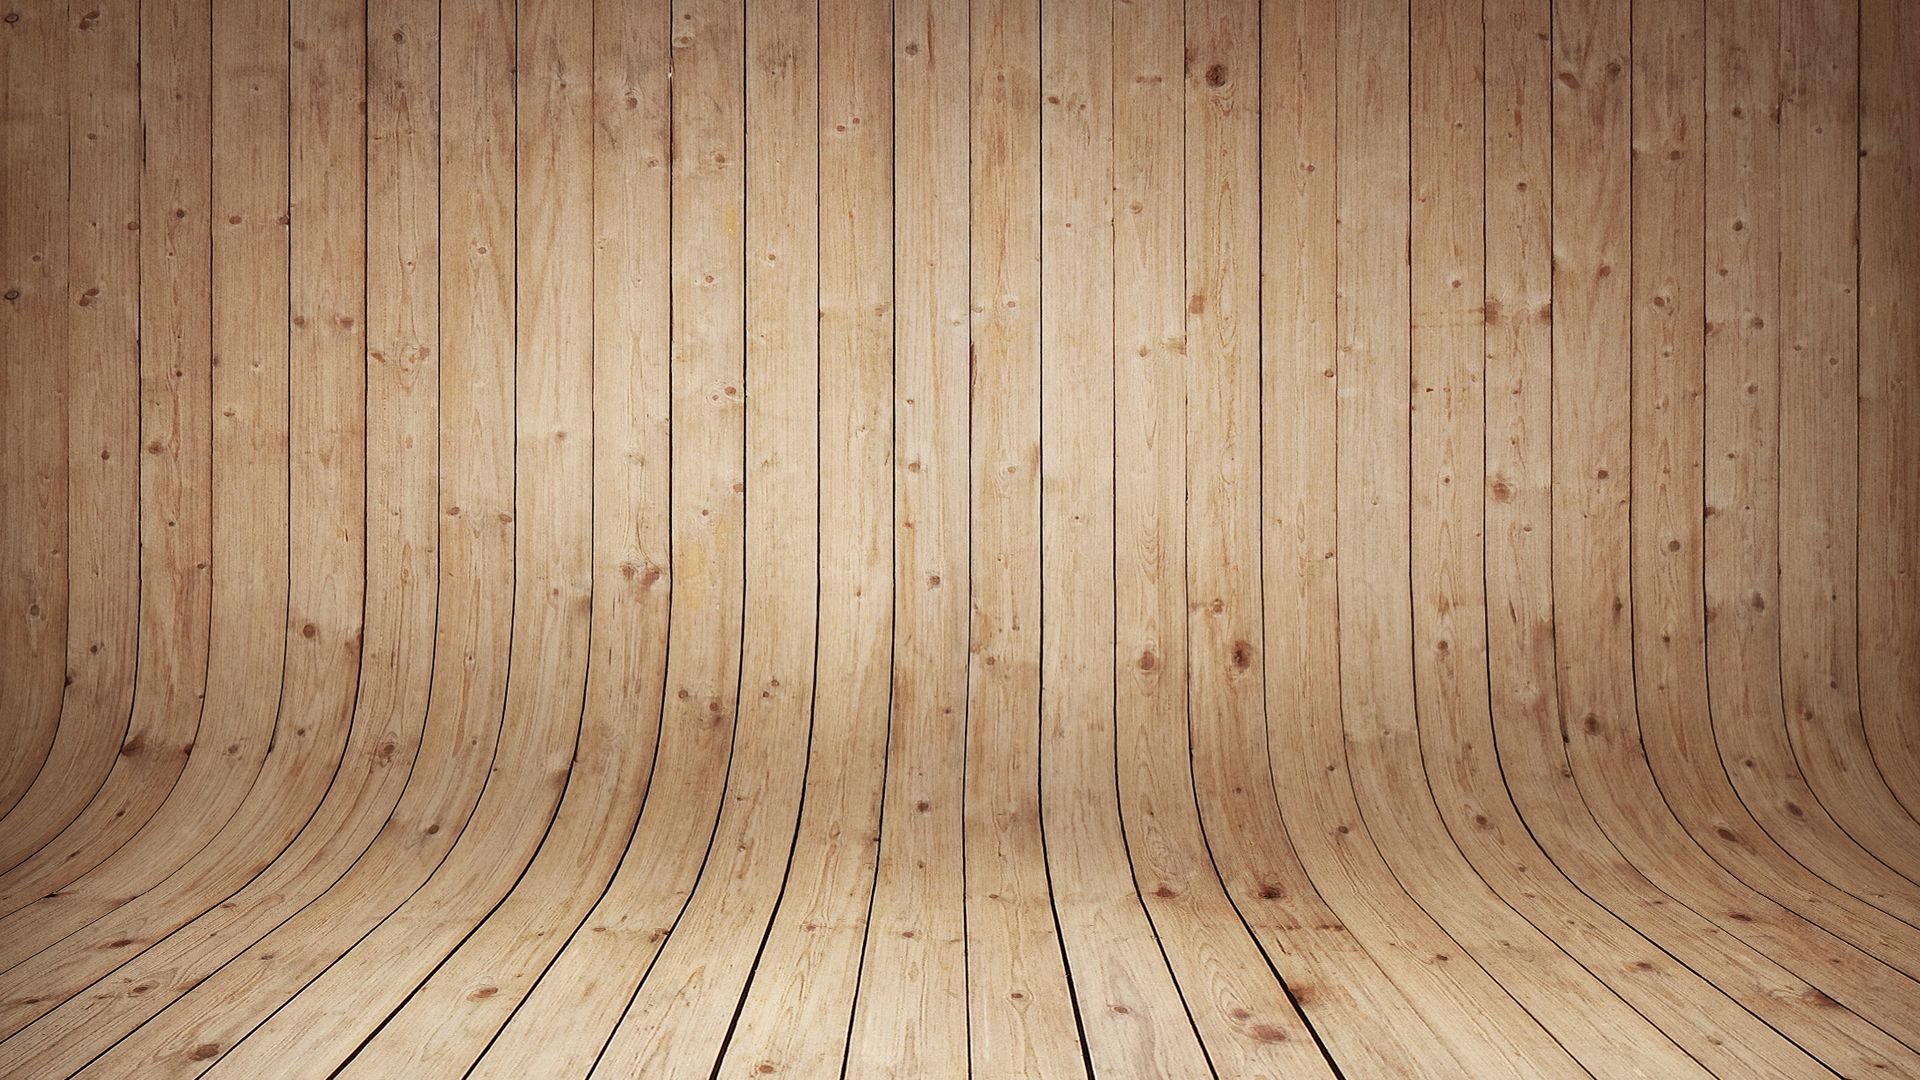 Gỗ (Wood): Với sự đa dạng của gỗ và cách sử dụng thông minh, những chiếc đồ từ gỗ sẽ mang lại một tầm nhìn mới về nội thất. Hãy theo dõi những tác phẩm đẹp mắt được chúng tôi giới thiệu để tìm kiếm nguồn cảm hứng cho kiến trúc gia của bạn.